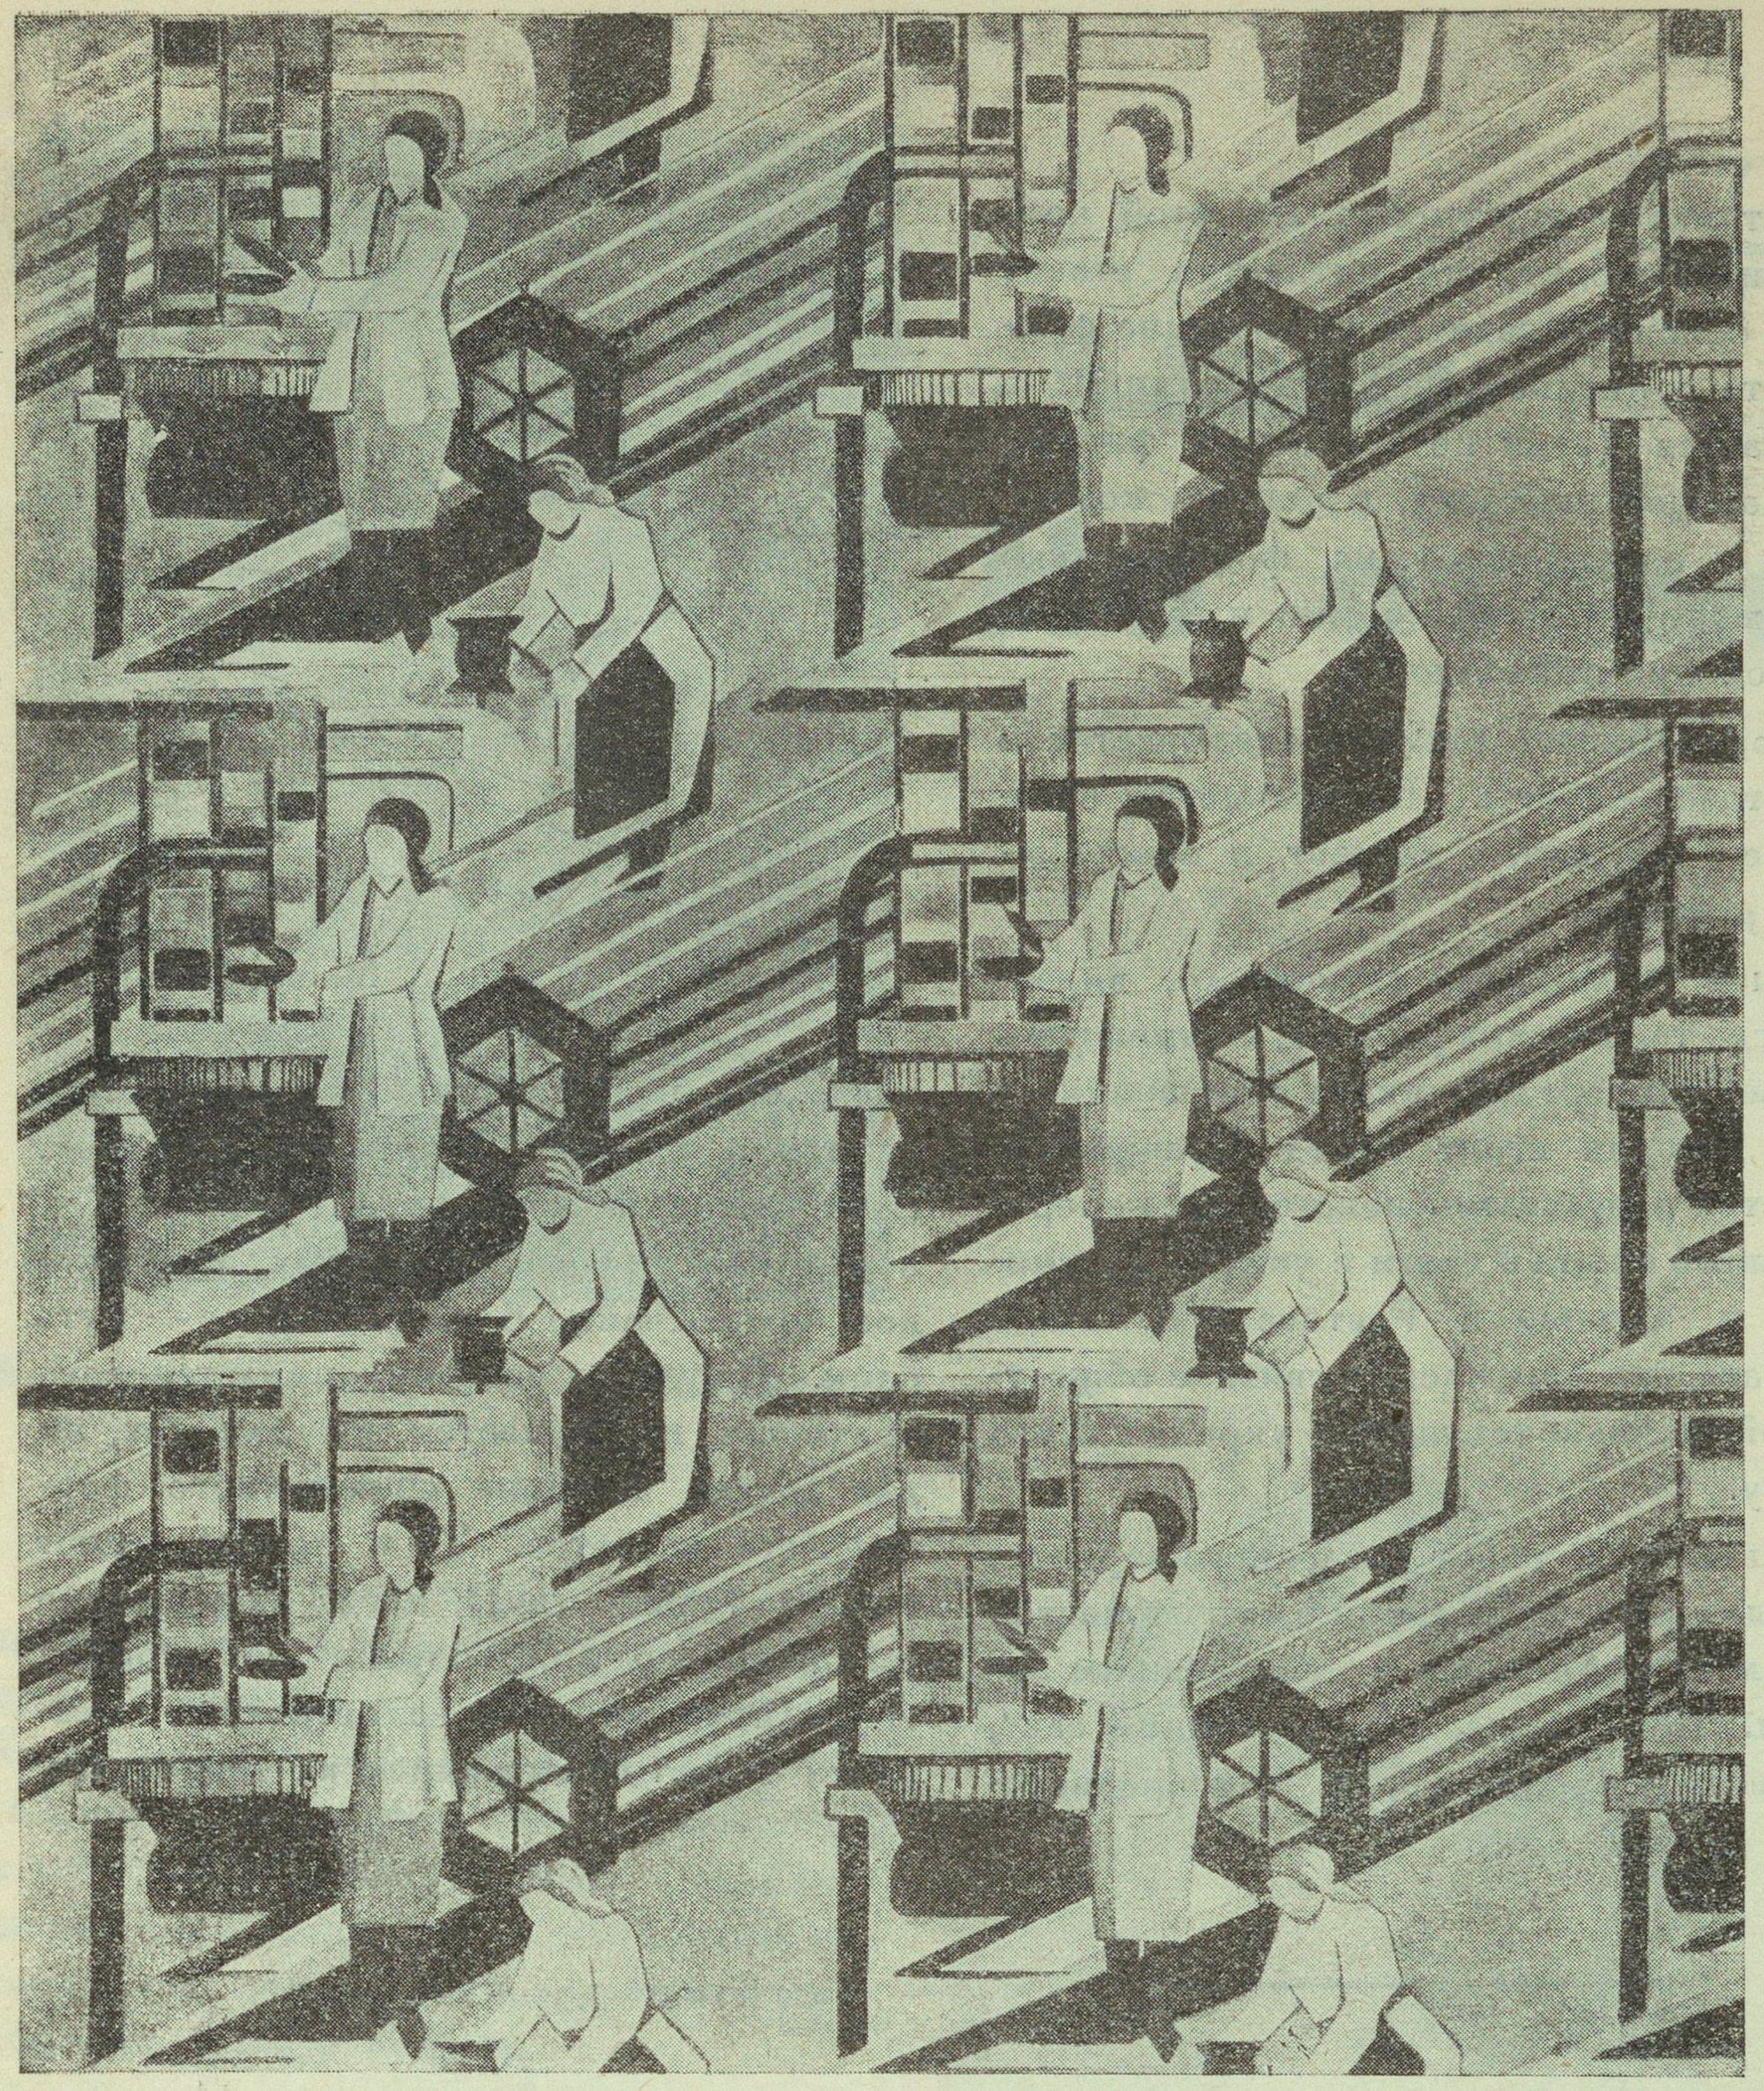 Худ. Коптева. На текстильной фабрике. Декоративная ткань «Искусство в массы». 1931. № 5